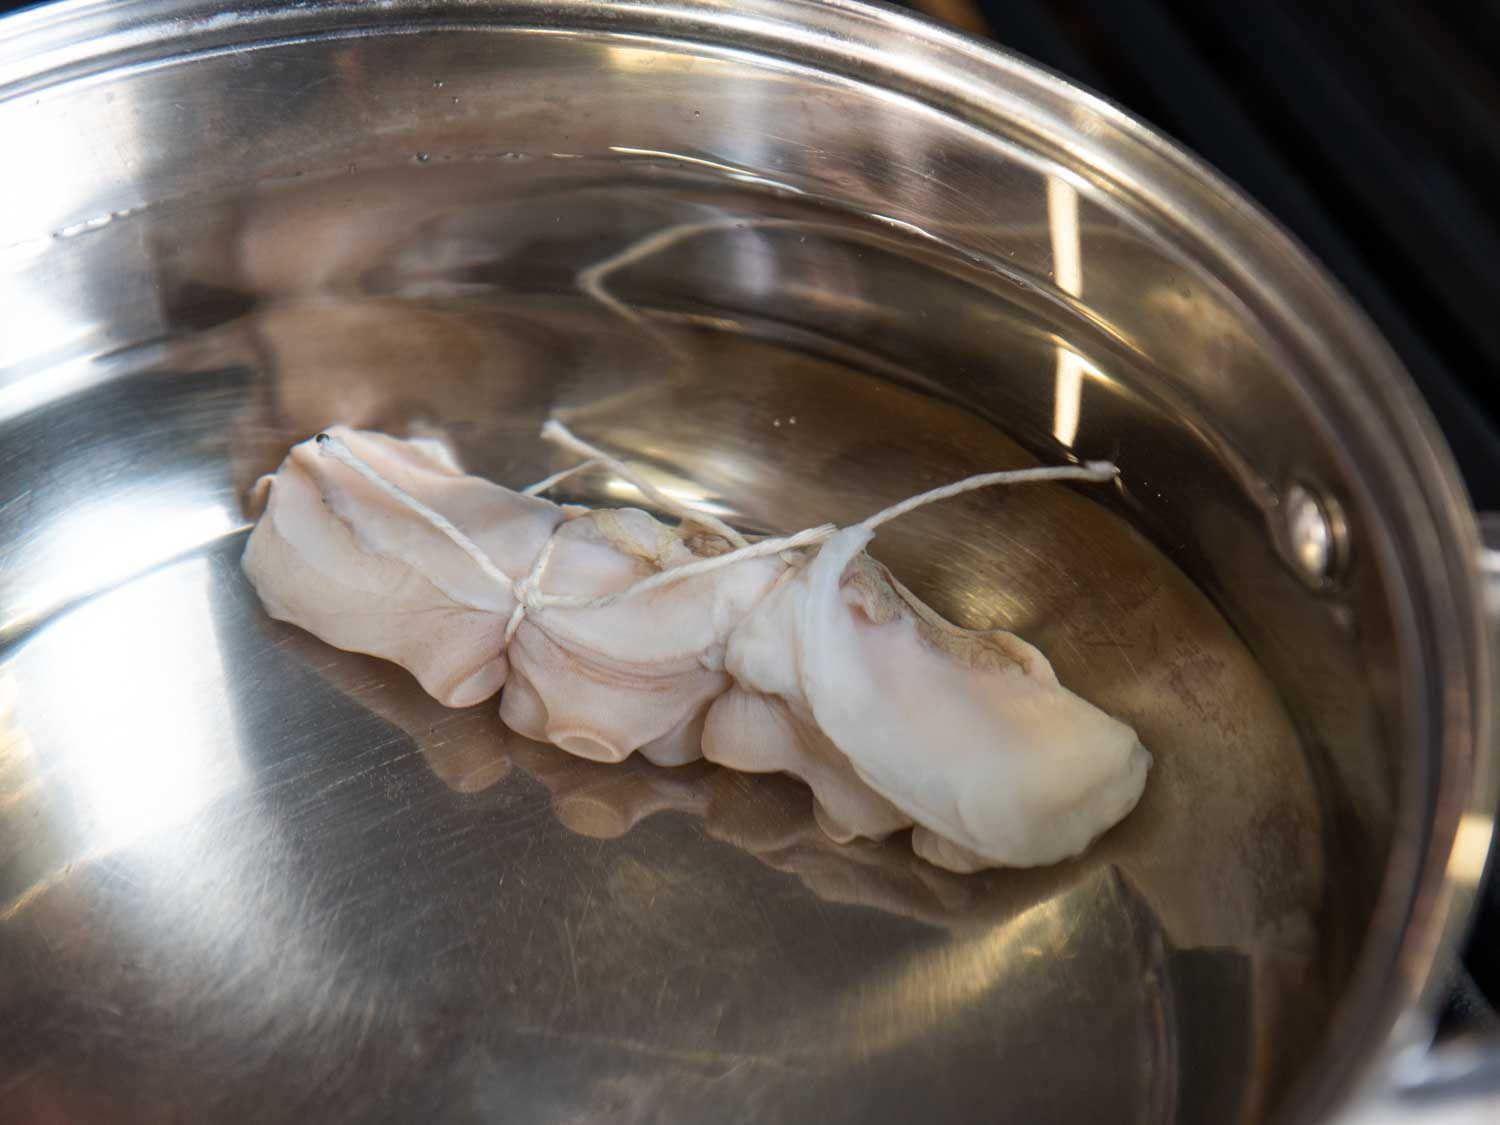 一锅冷水里的生章鱼触须;触须上系有绳子，用来区分同一锅中的不同测试变量。